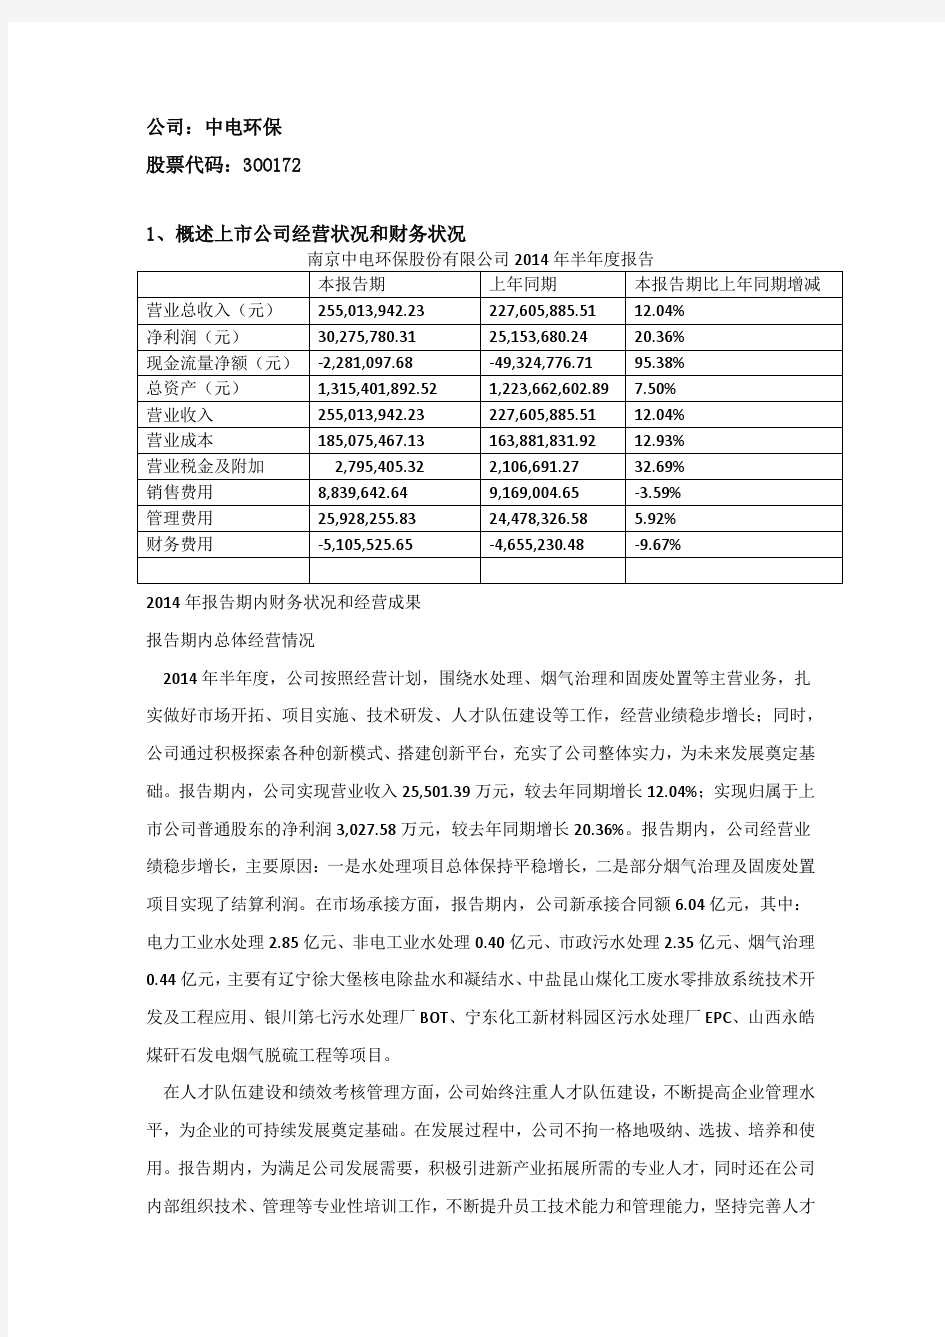 南京中电环保股份有限公司经营情况概述